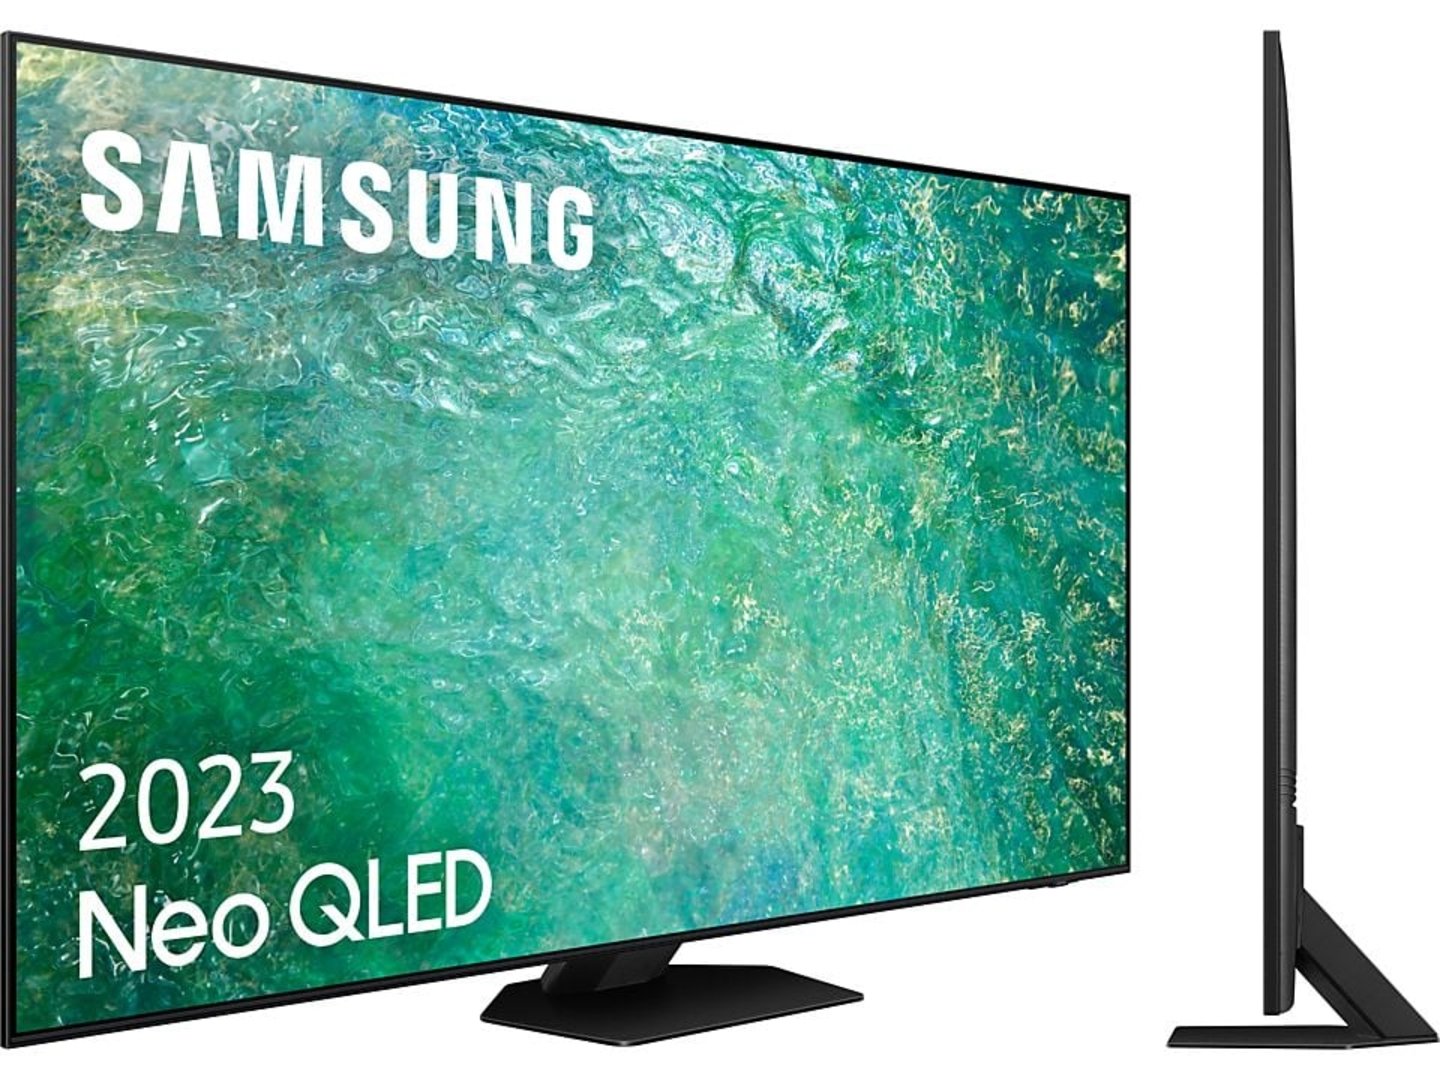 Esta smart tv LG OLED 55 pulgadas cae de precio: 800 € en